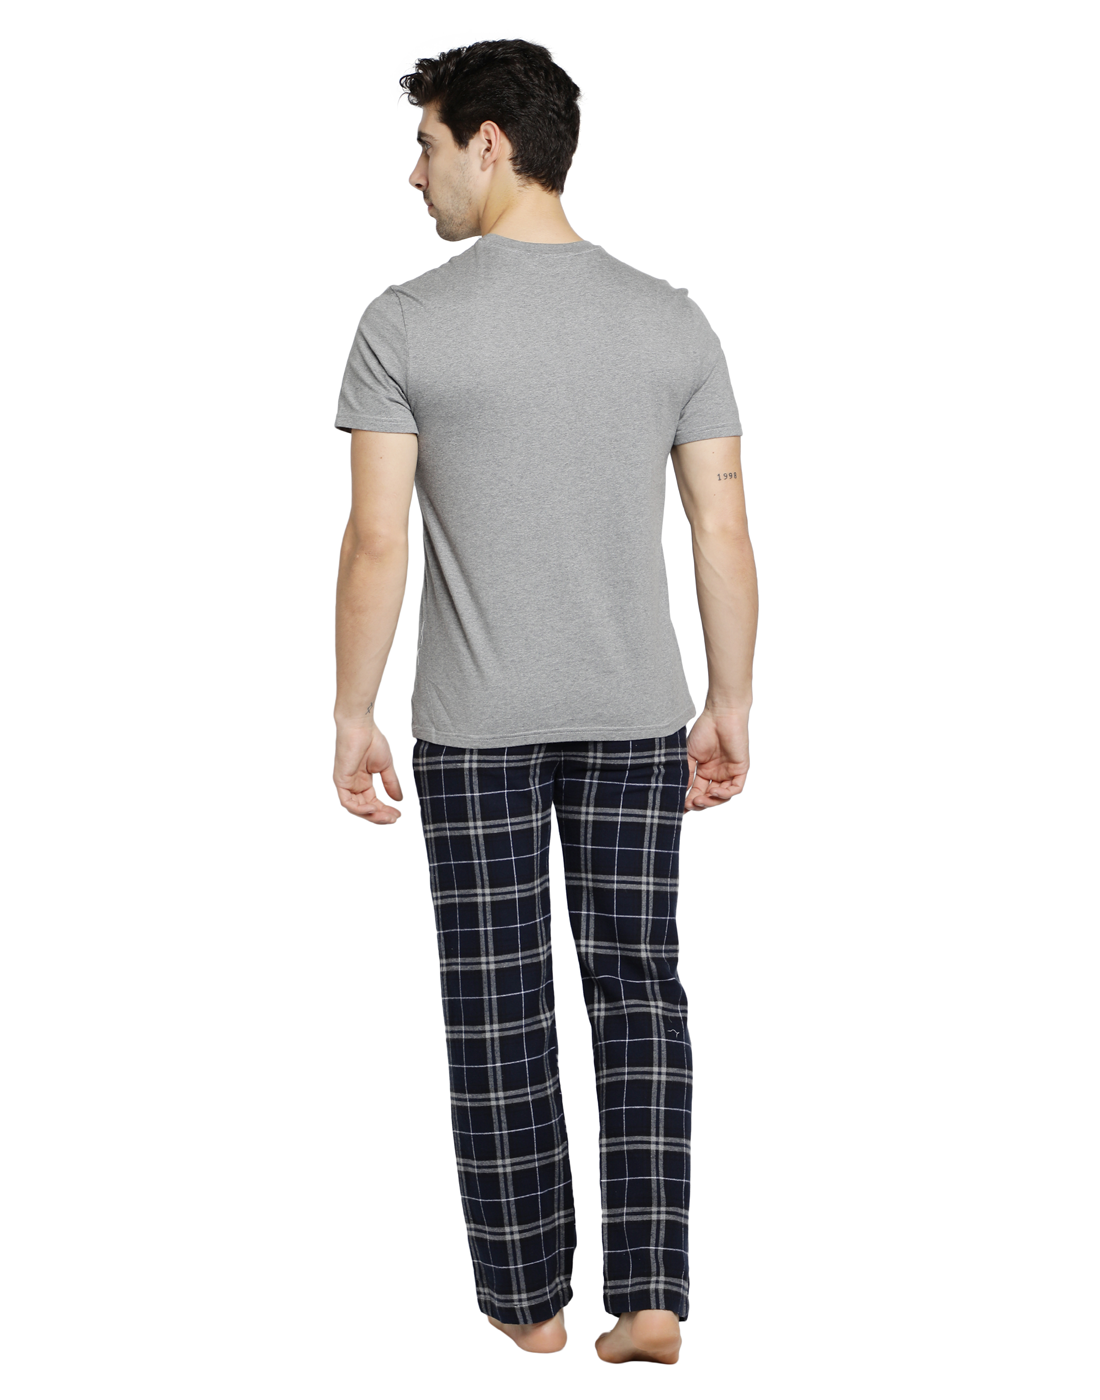 Pyjama Set for Mens-Navy Checks